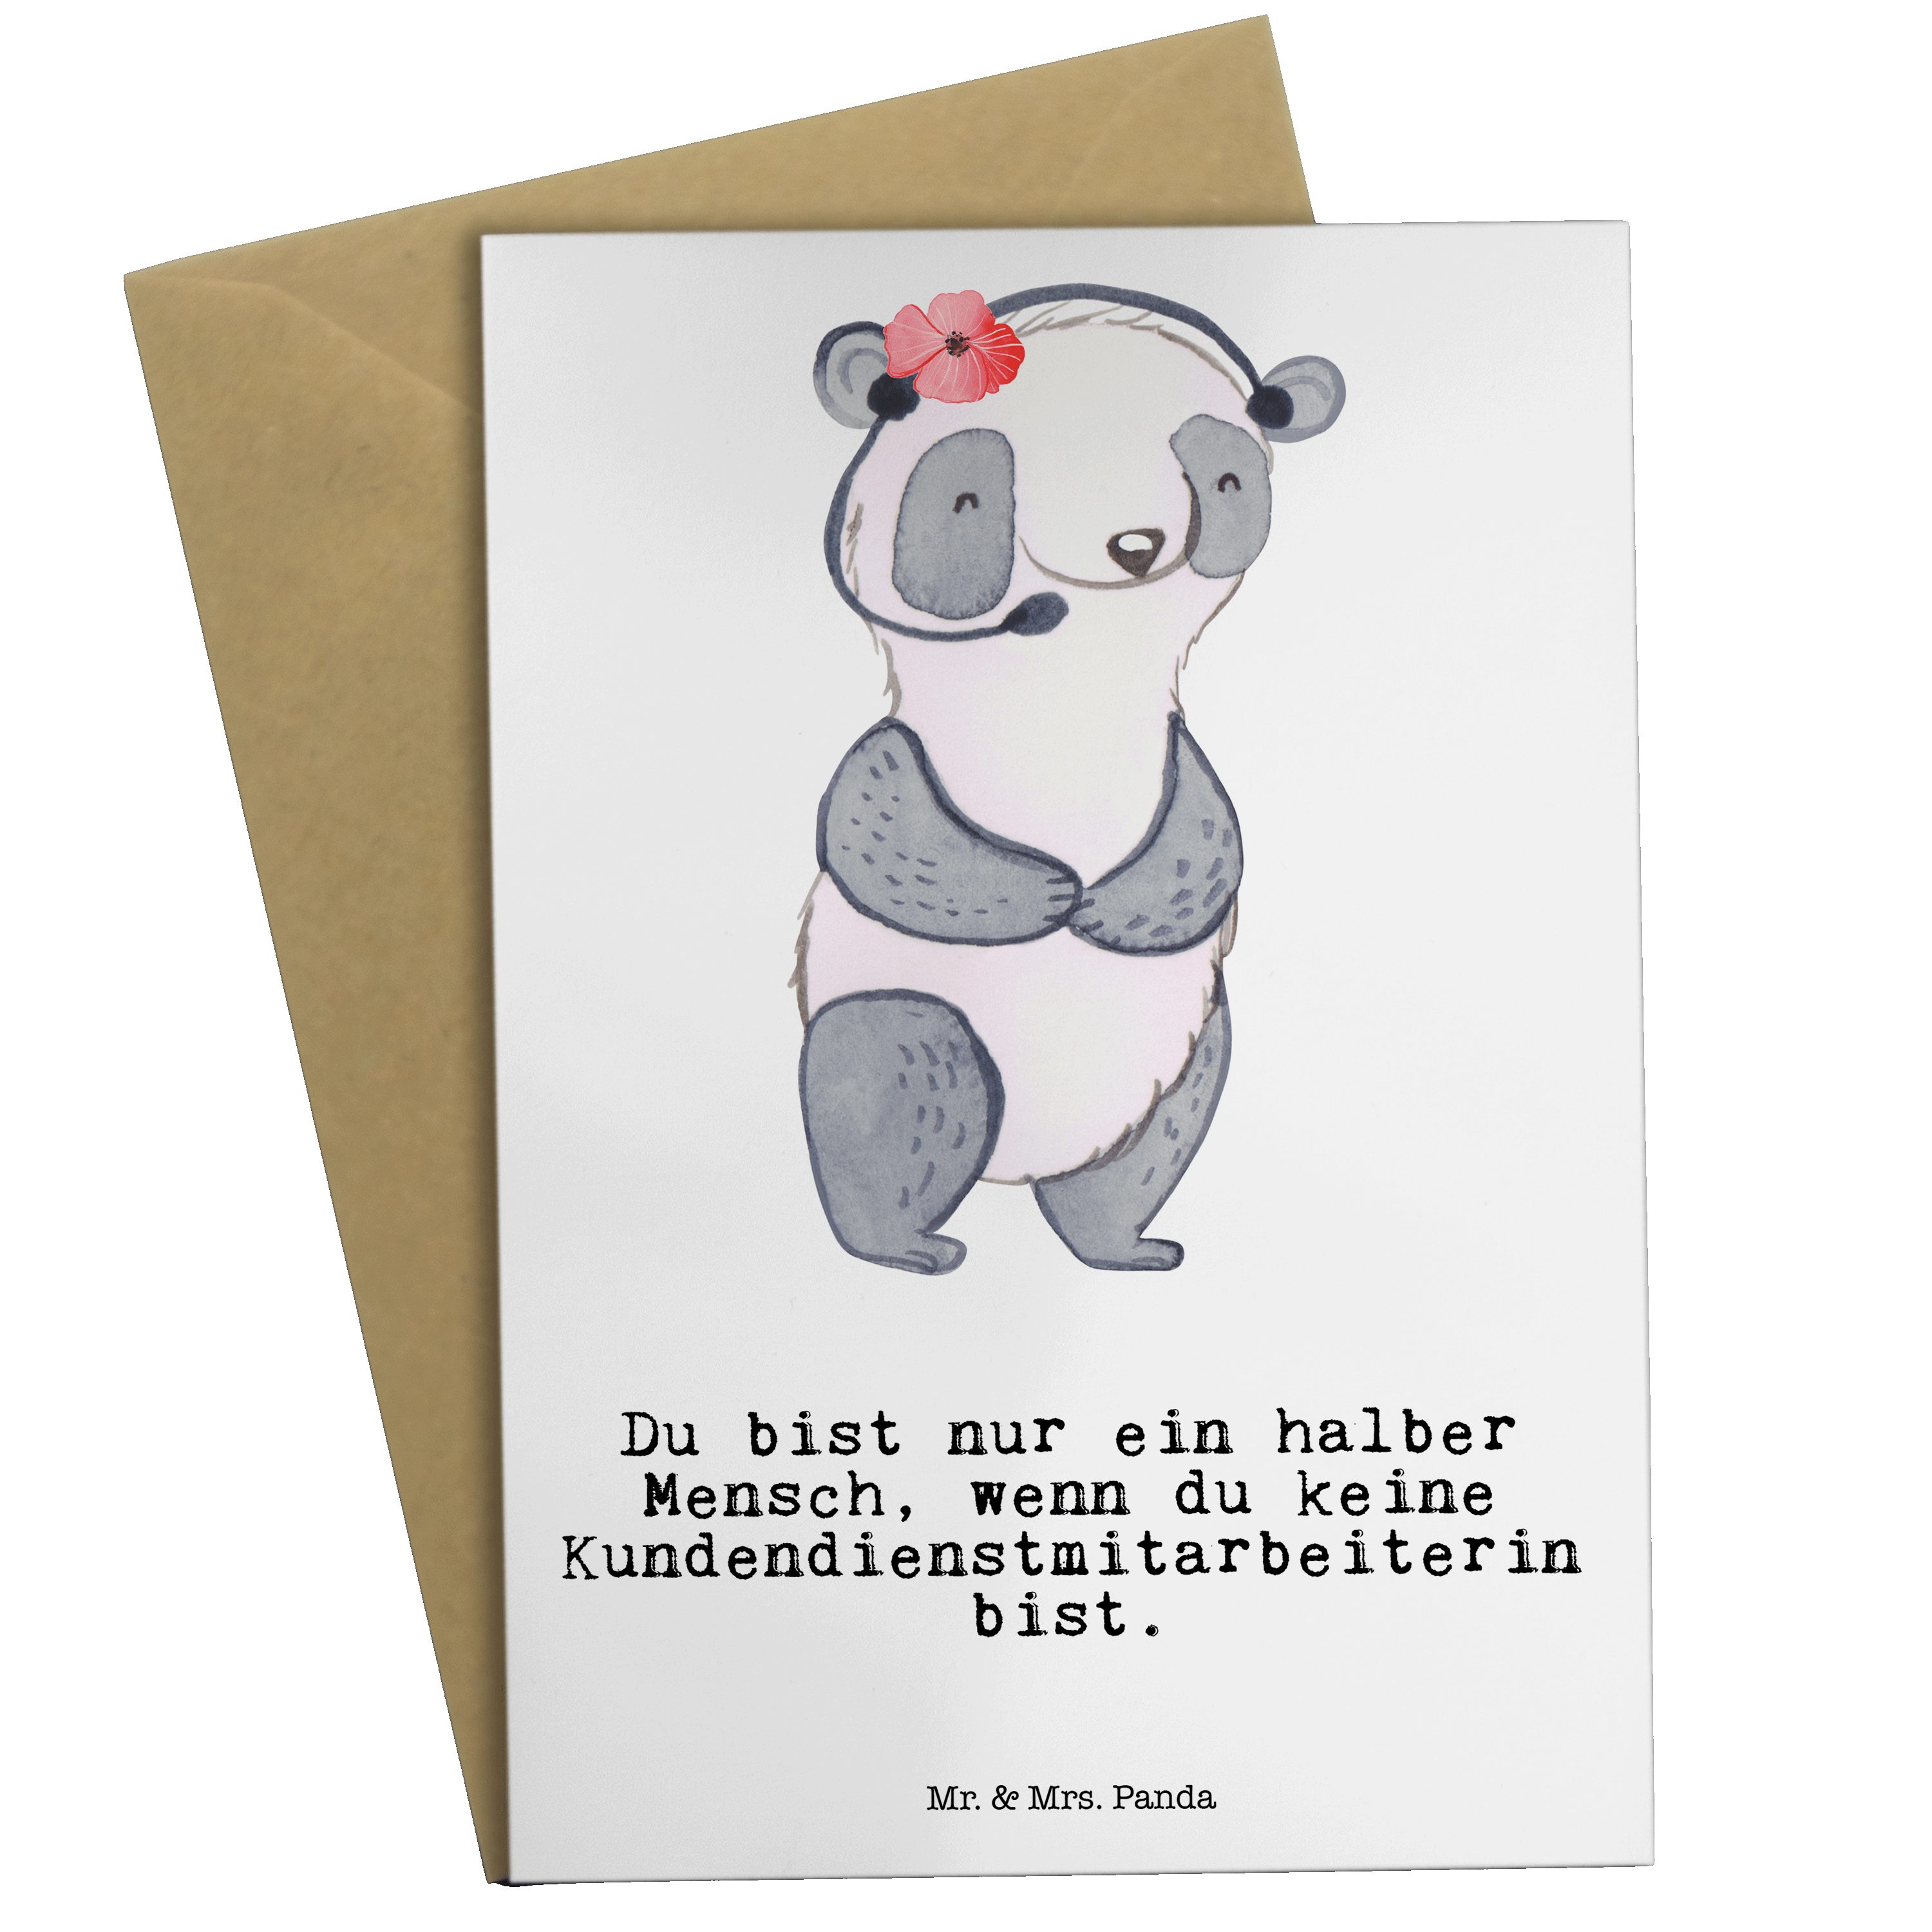 Mr. & Mrs. Panda Grußkarte Kundendienstmitarbeiterin mit Herz - Weiß - Geschenk, Danke, Callcent | Grußkarten